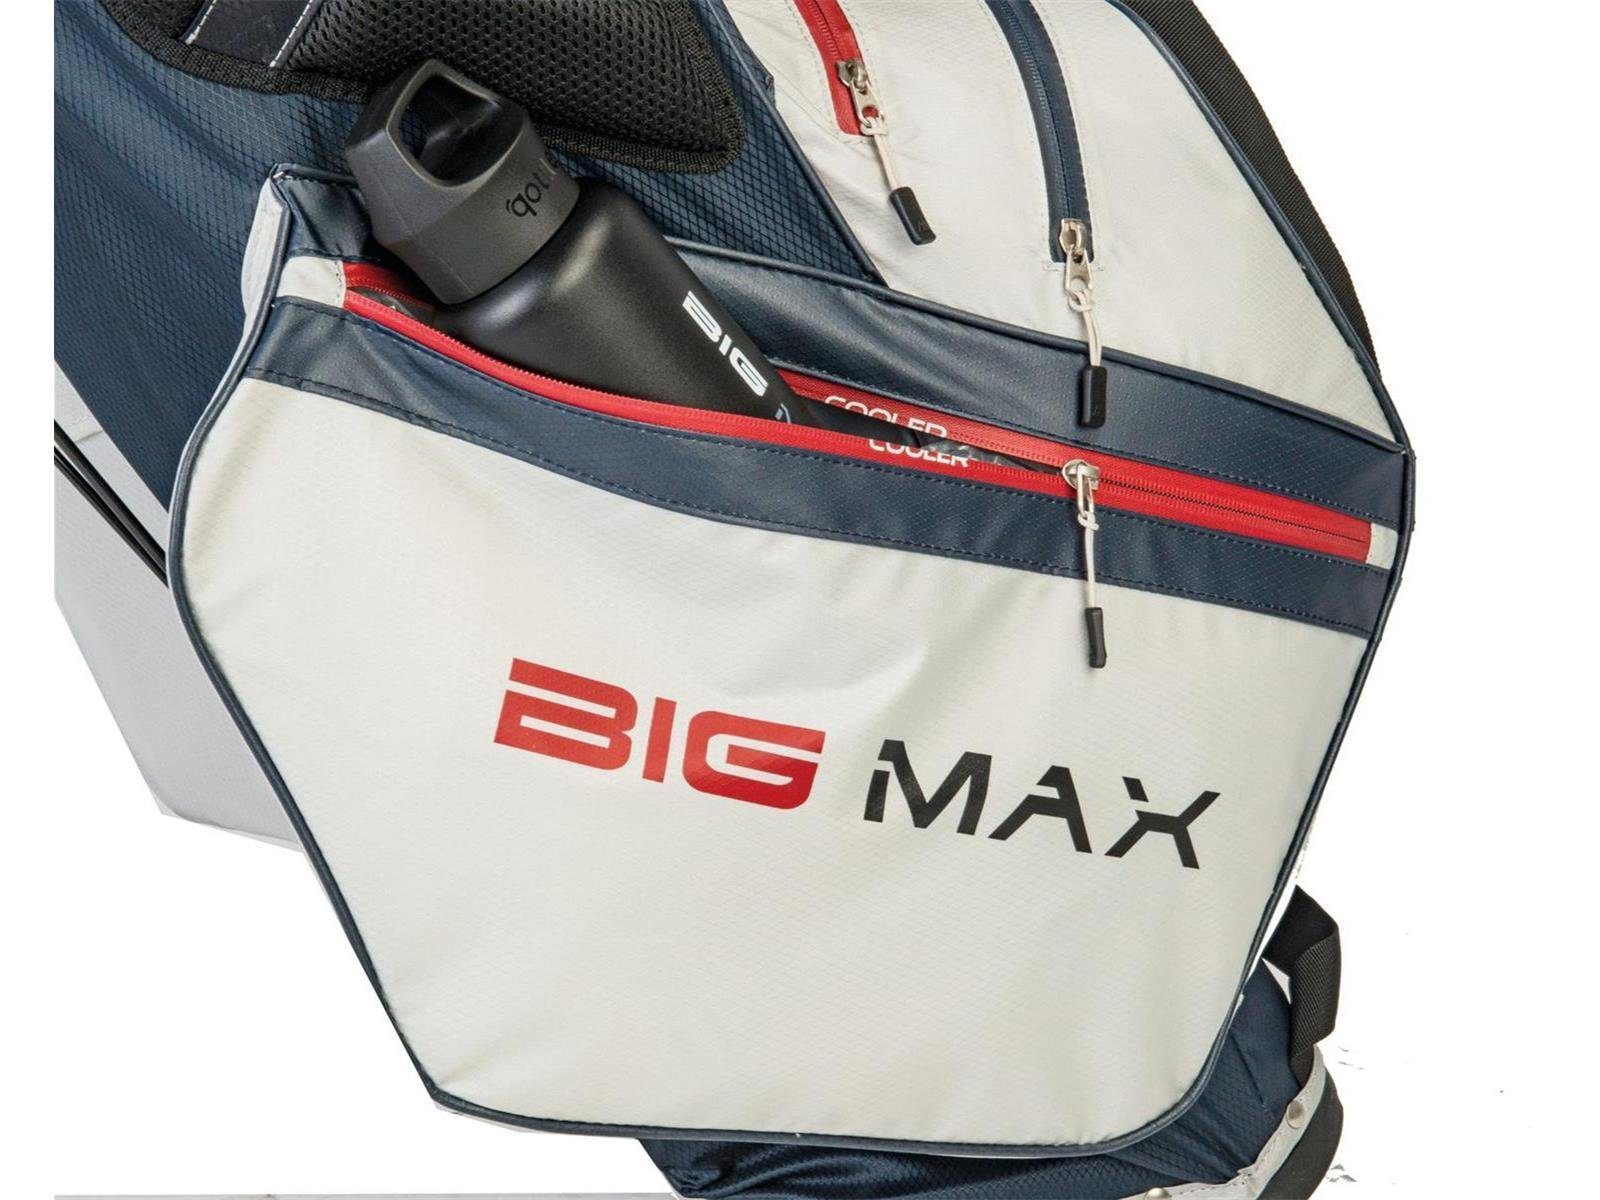 Max Merlot I BIG Big MAX Tour, Golf DRI Ständerbag Divider LITE Wasserabweisen Golfreisetasche 14-fach Hybrid